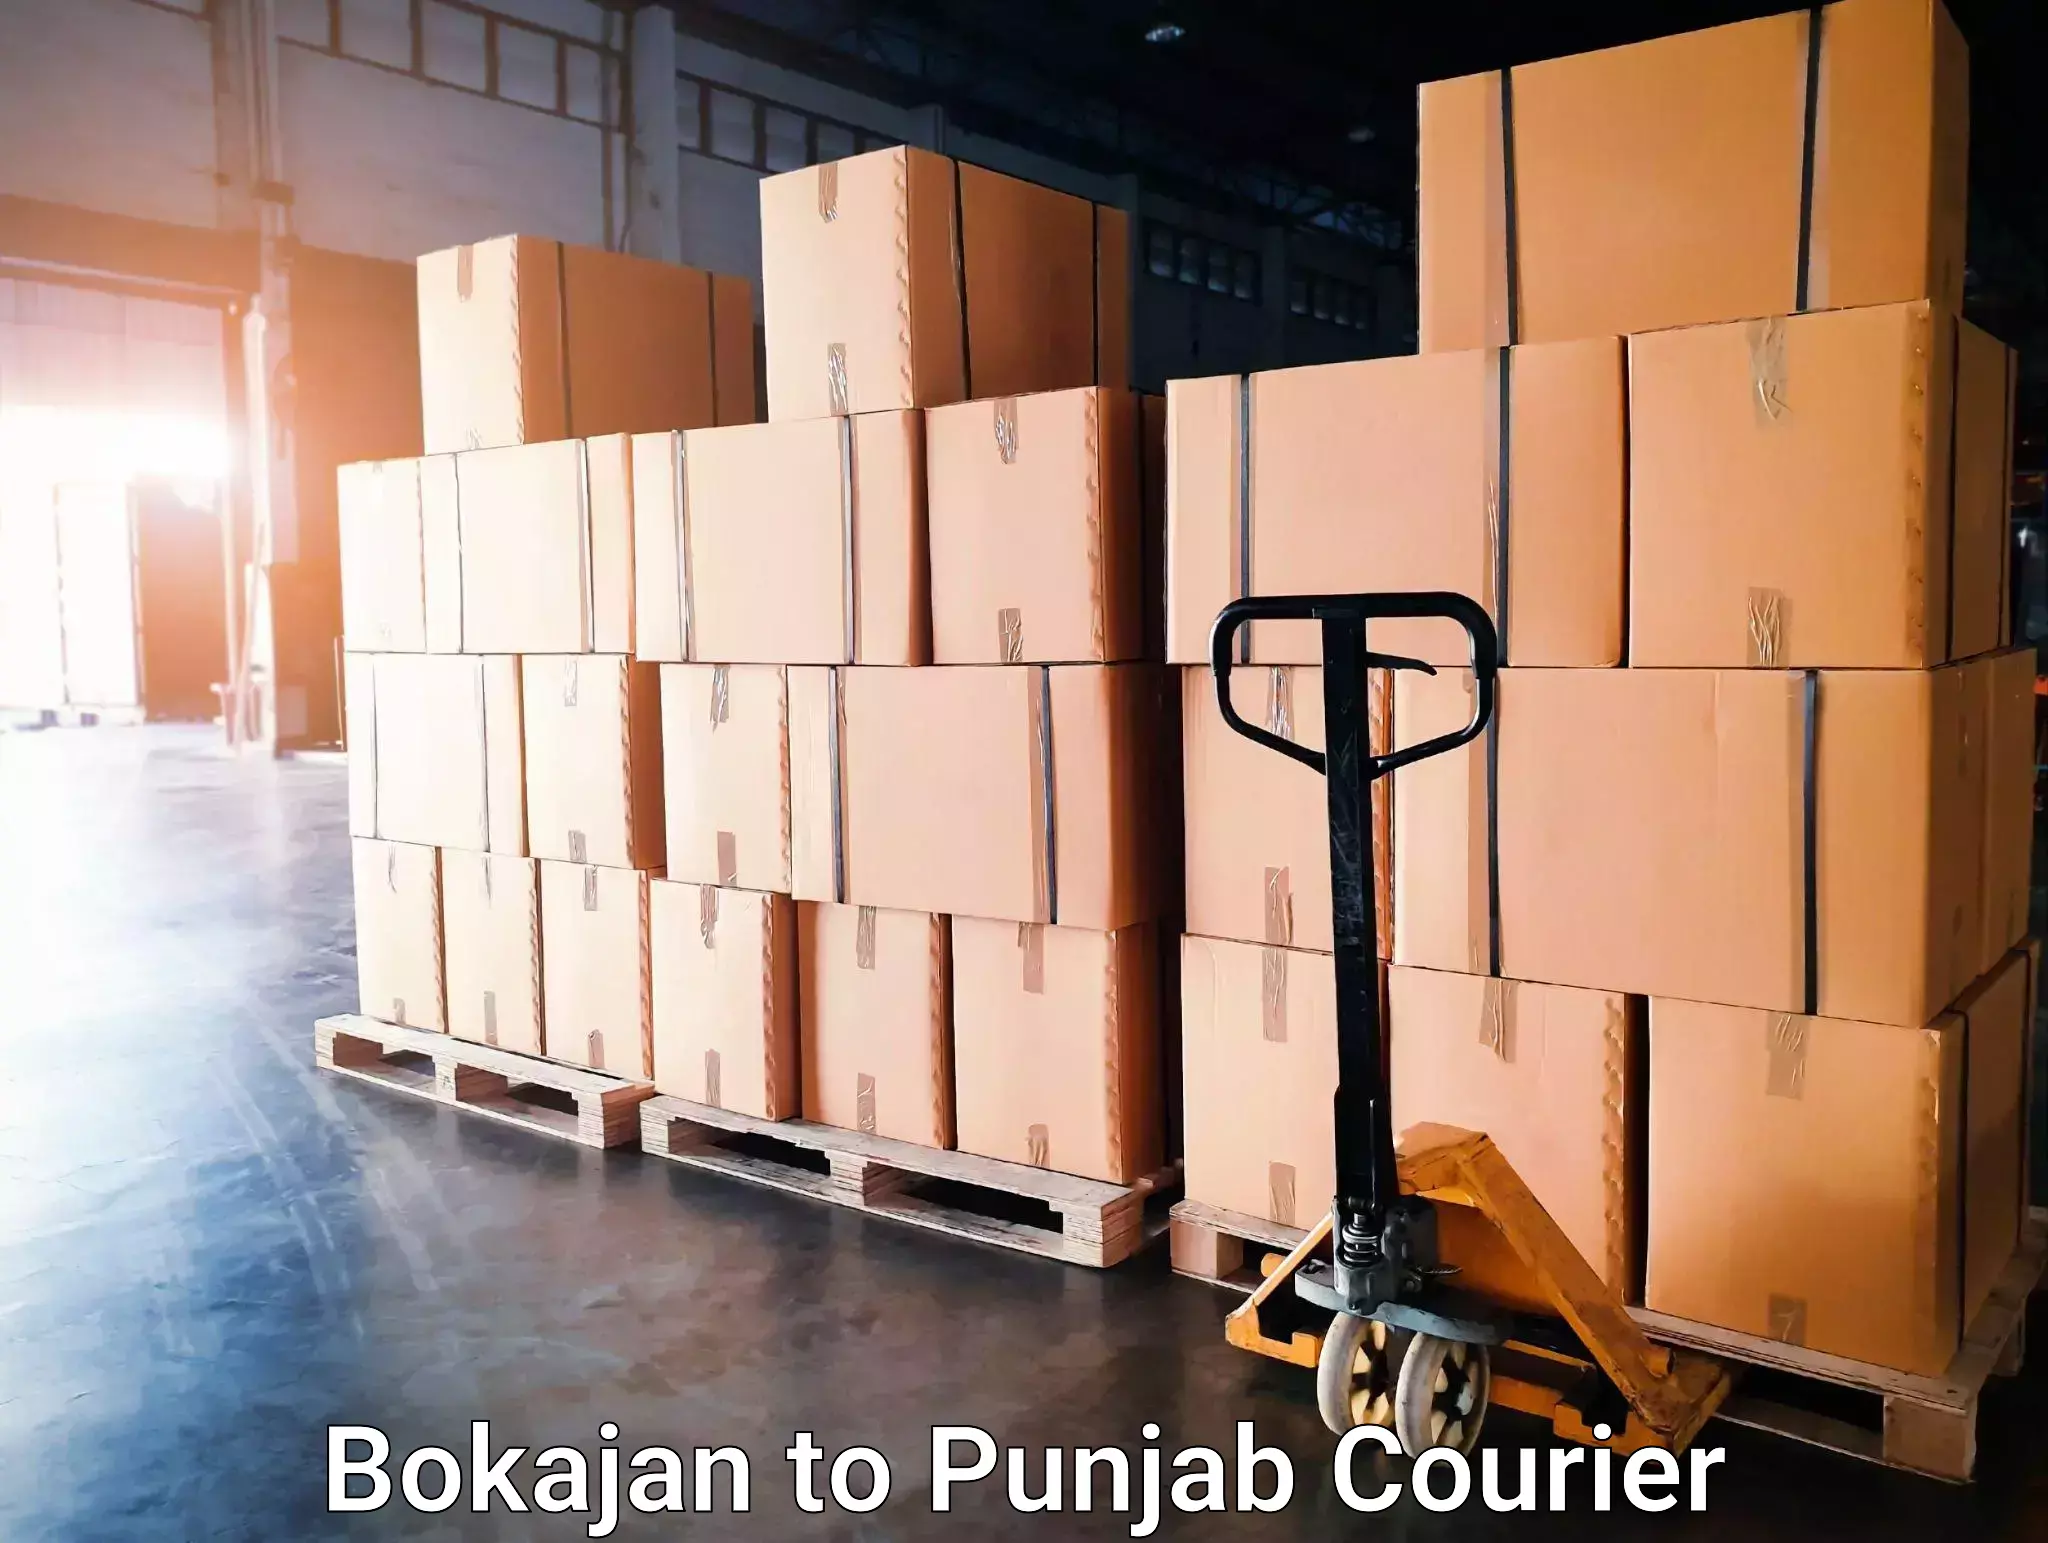 Pharmaceutical courier Bokajan to Punjab